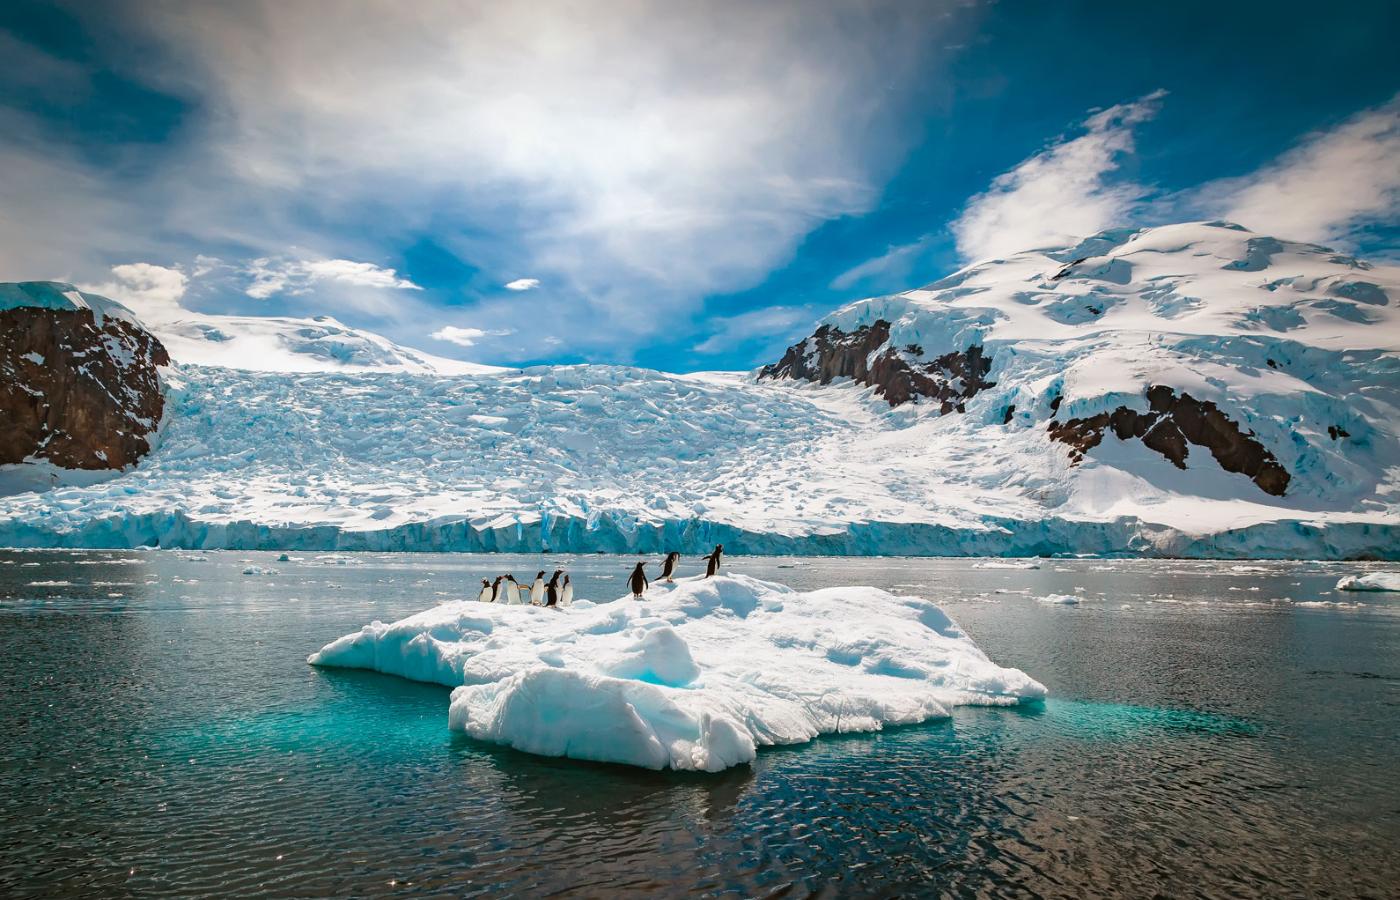 James Hansen jako pierwszy naukowiec użył w Kongresie USA zwrotu „globalne ocieplenie”. To było ponad trzy dekady temu. Dziś uważa, że amerykańscy prezydenci niewiele zrobili, żeby narracja ratowania klimatu przedostała się do polityki. Na fot. topniejąca Antarktyka.